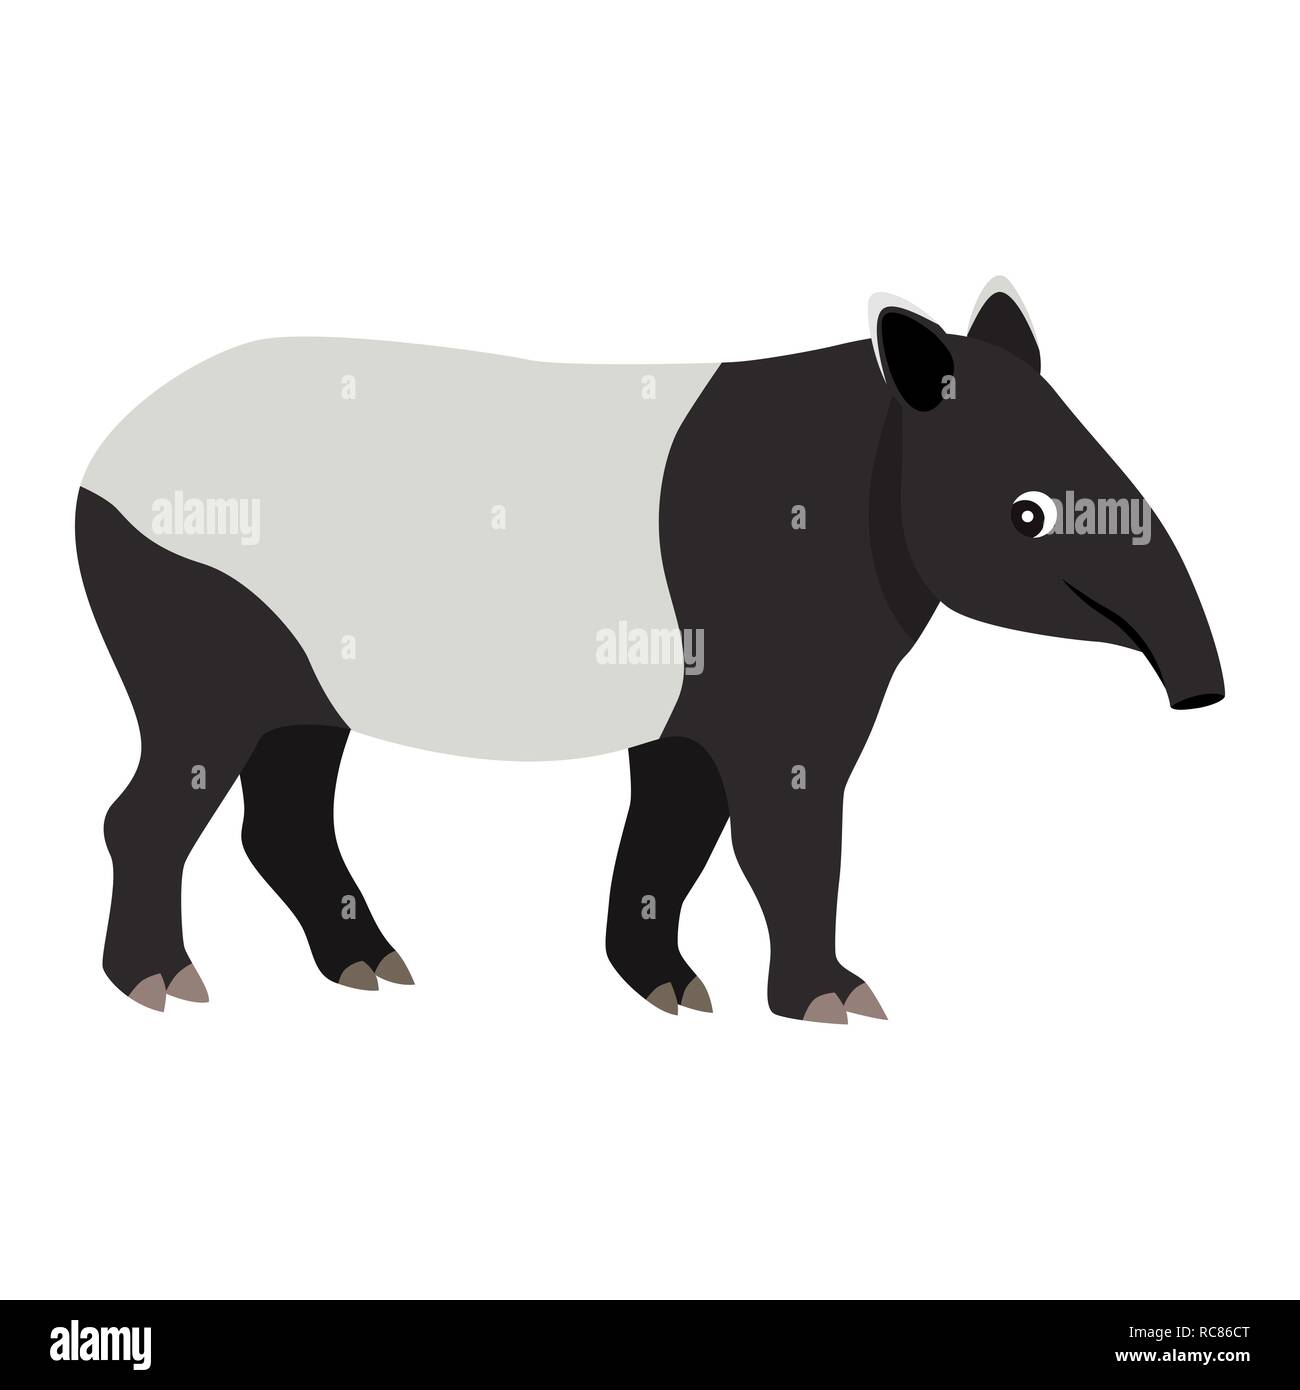 Nett freundlich wildes Tier, Schwarze und Weiße tapir Symbol Stock Vektor